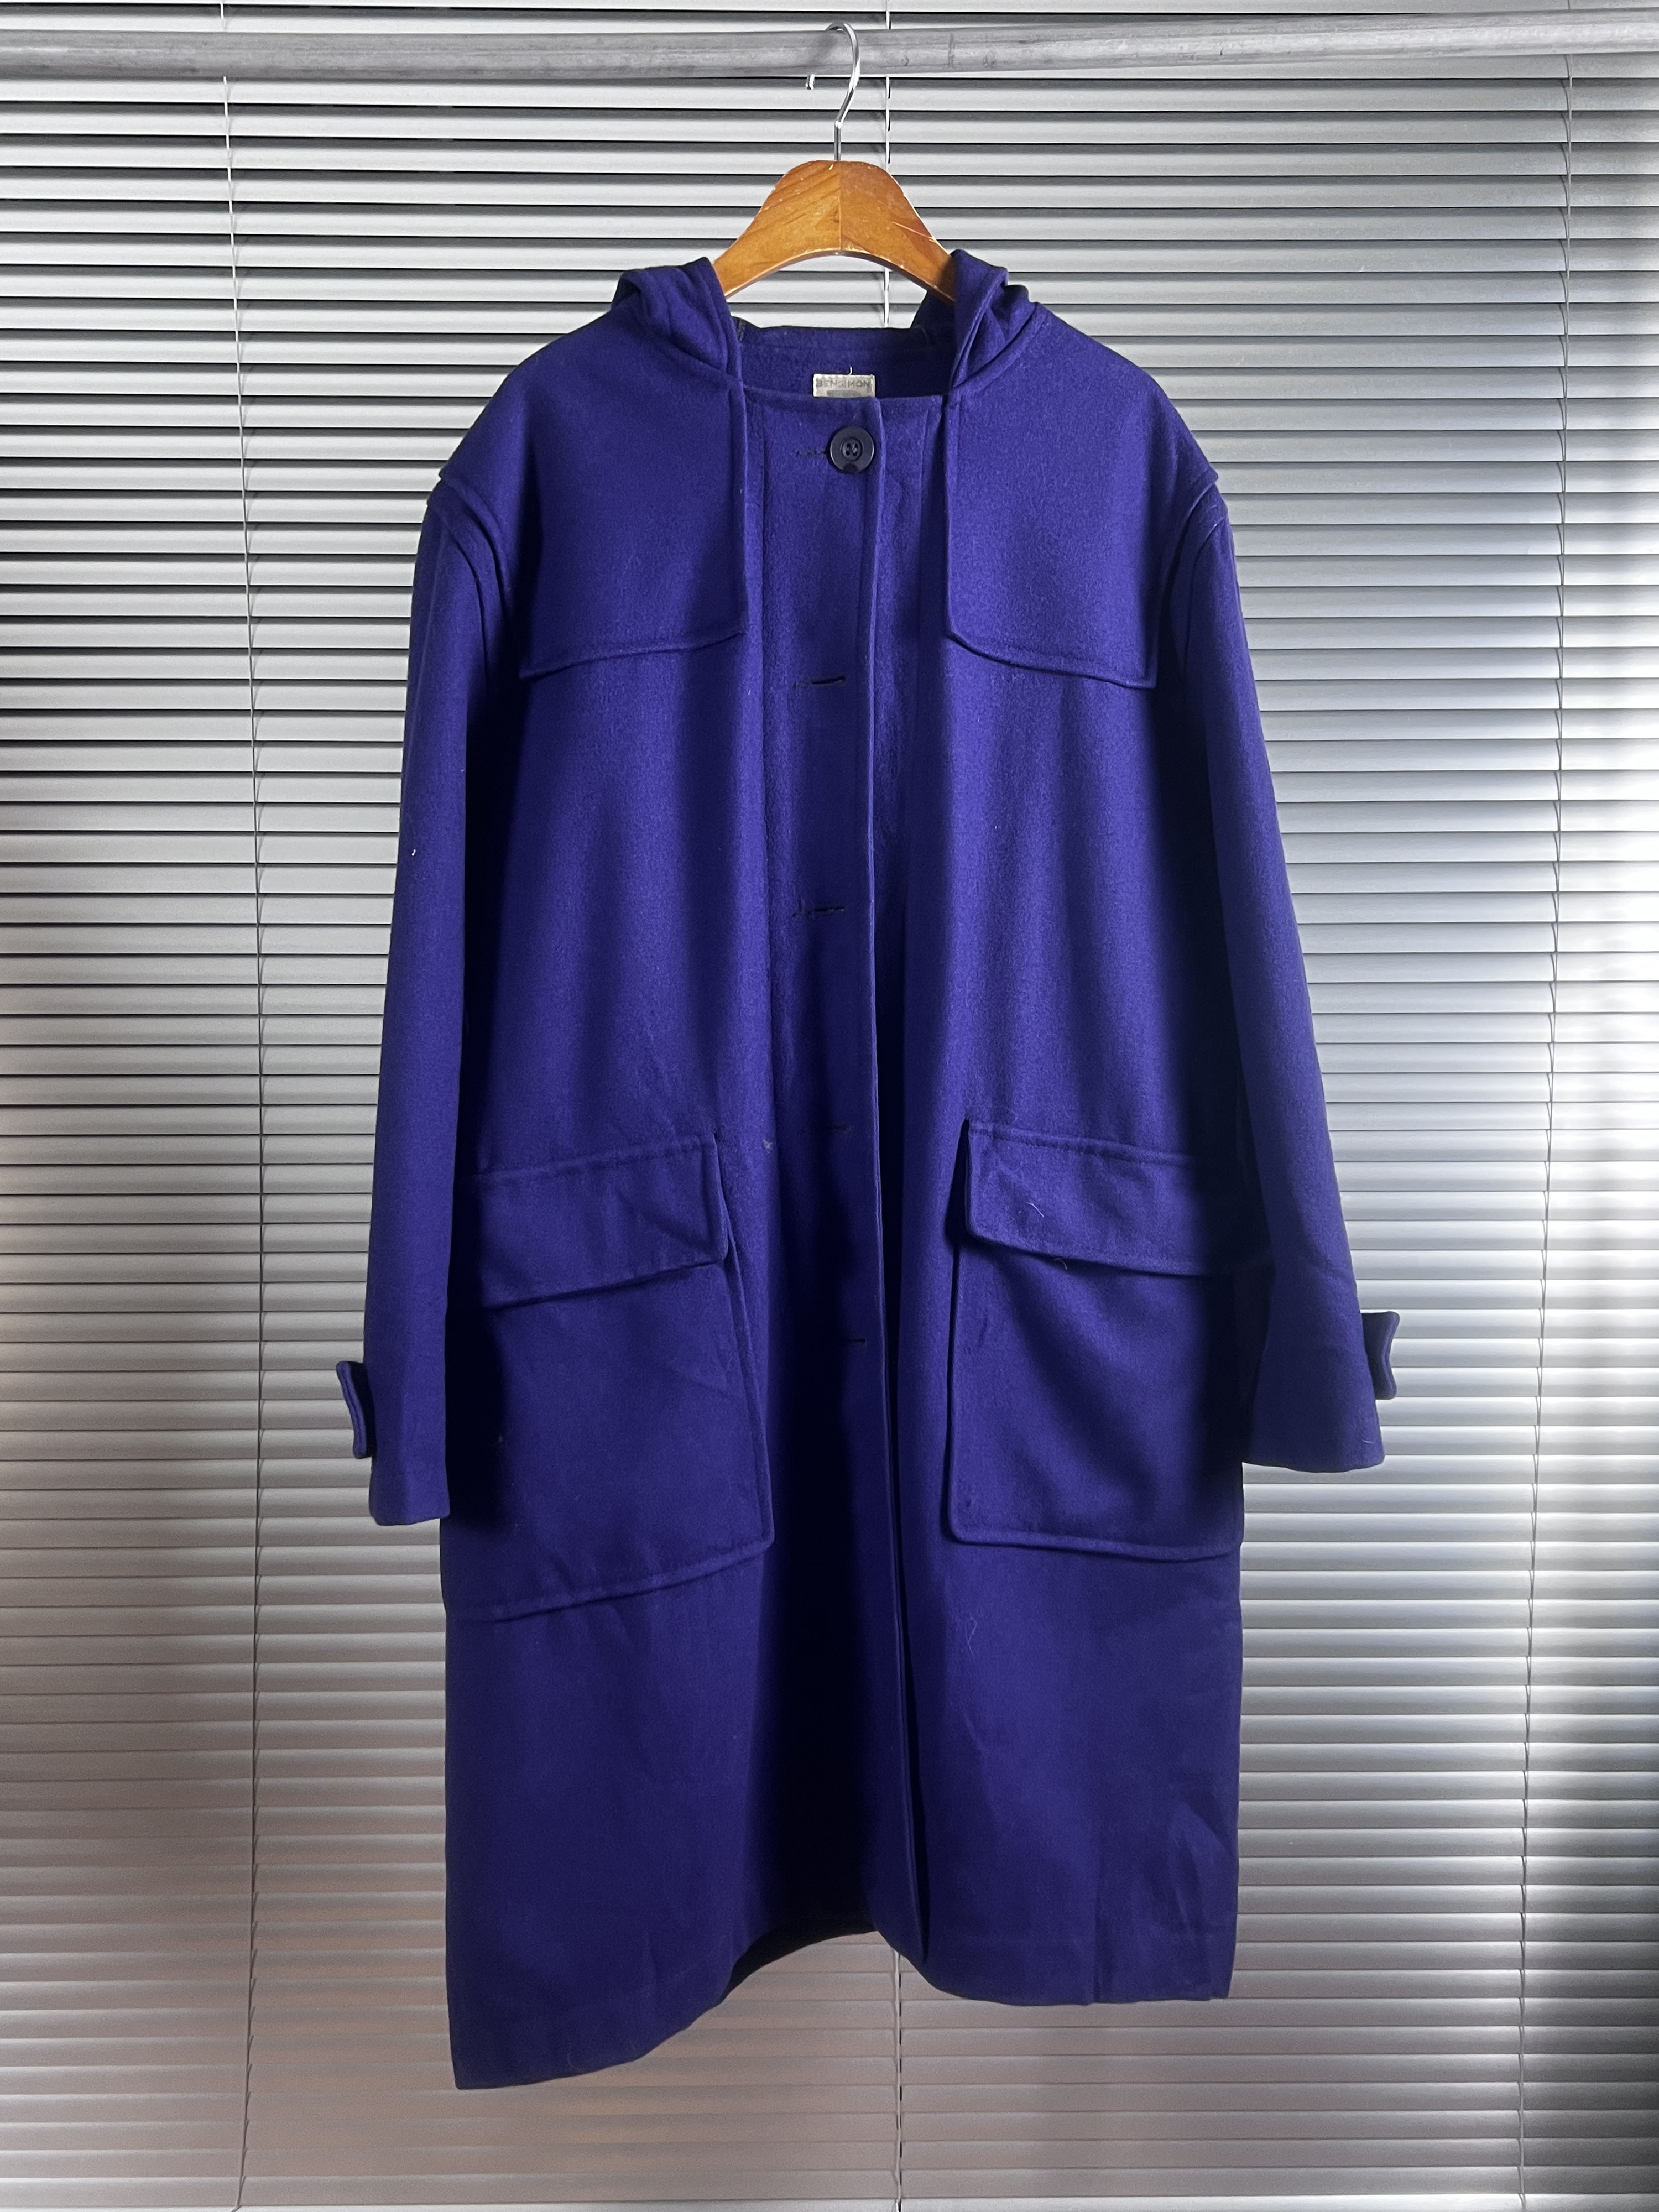 BENSIMON purple coat